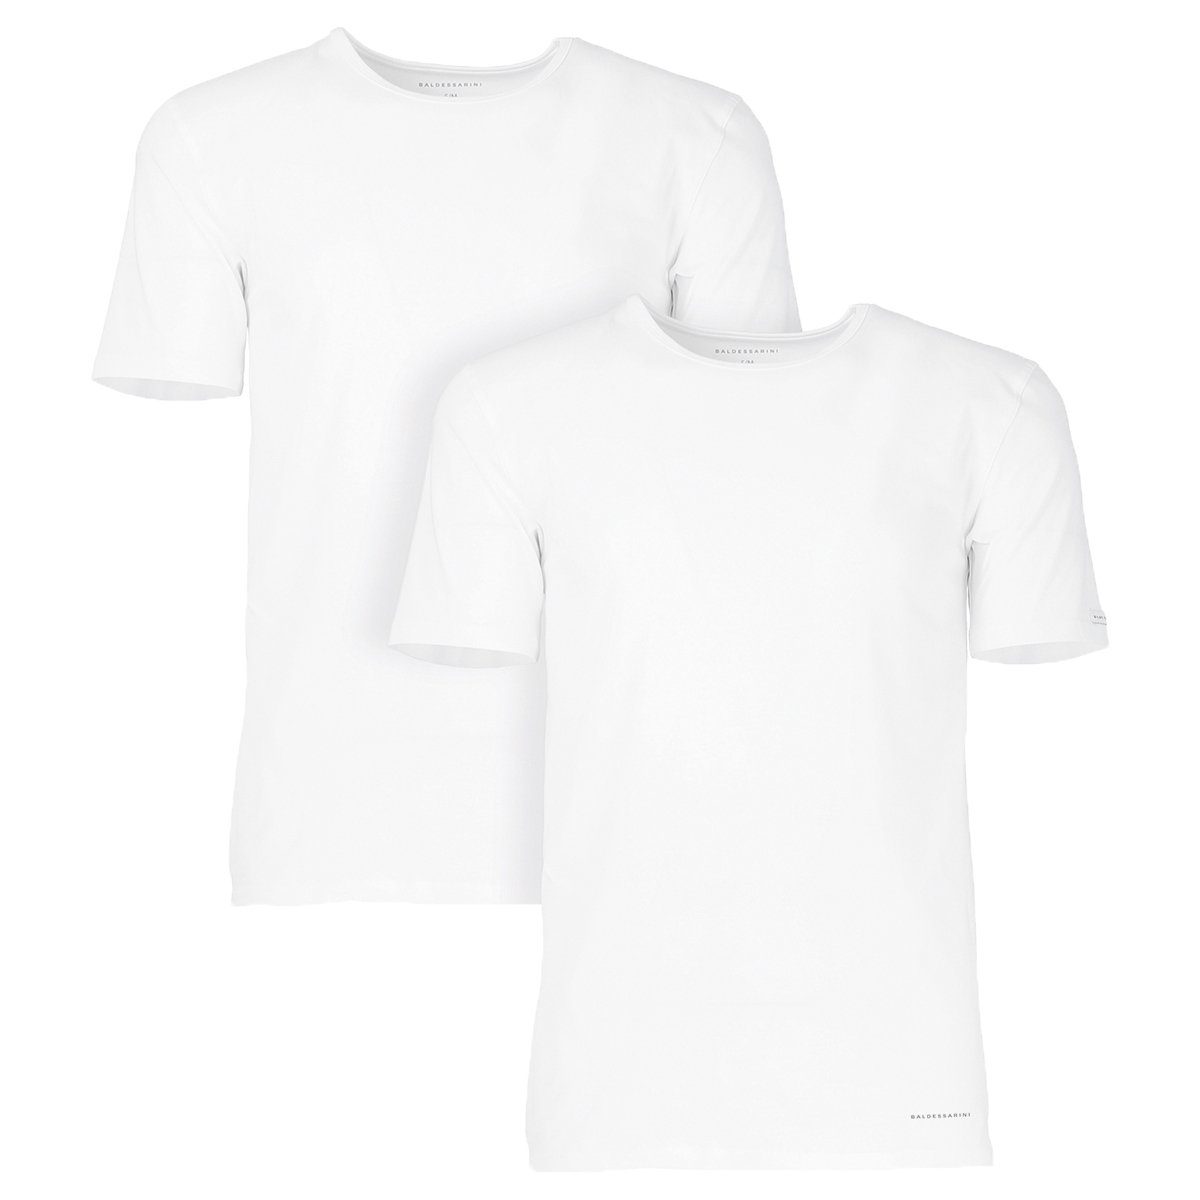 BALDESSARINI Unterhemd Herren Unterhemd 2er Pack - Rundhals, Halbarm weiß